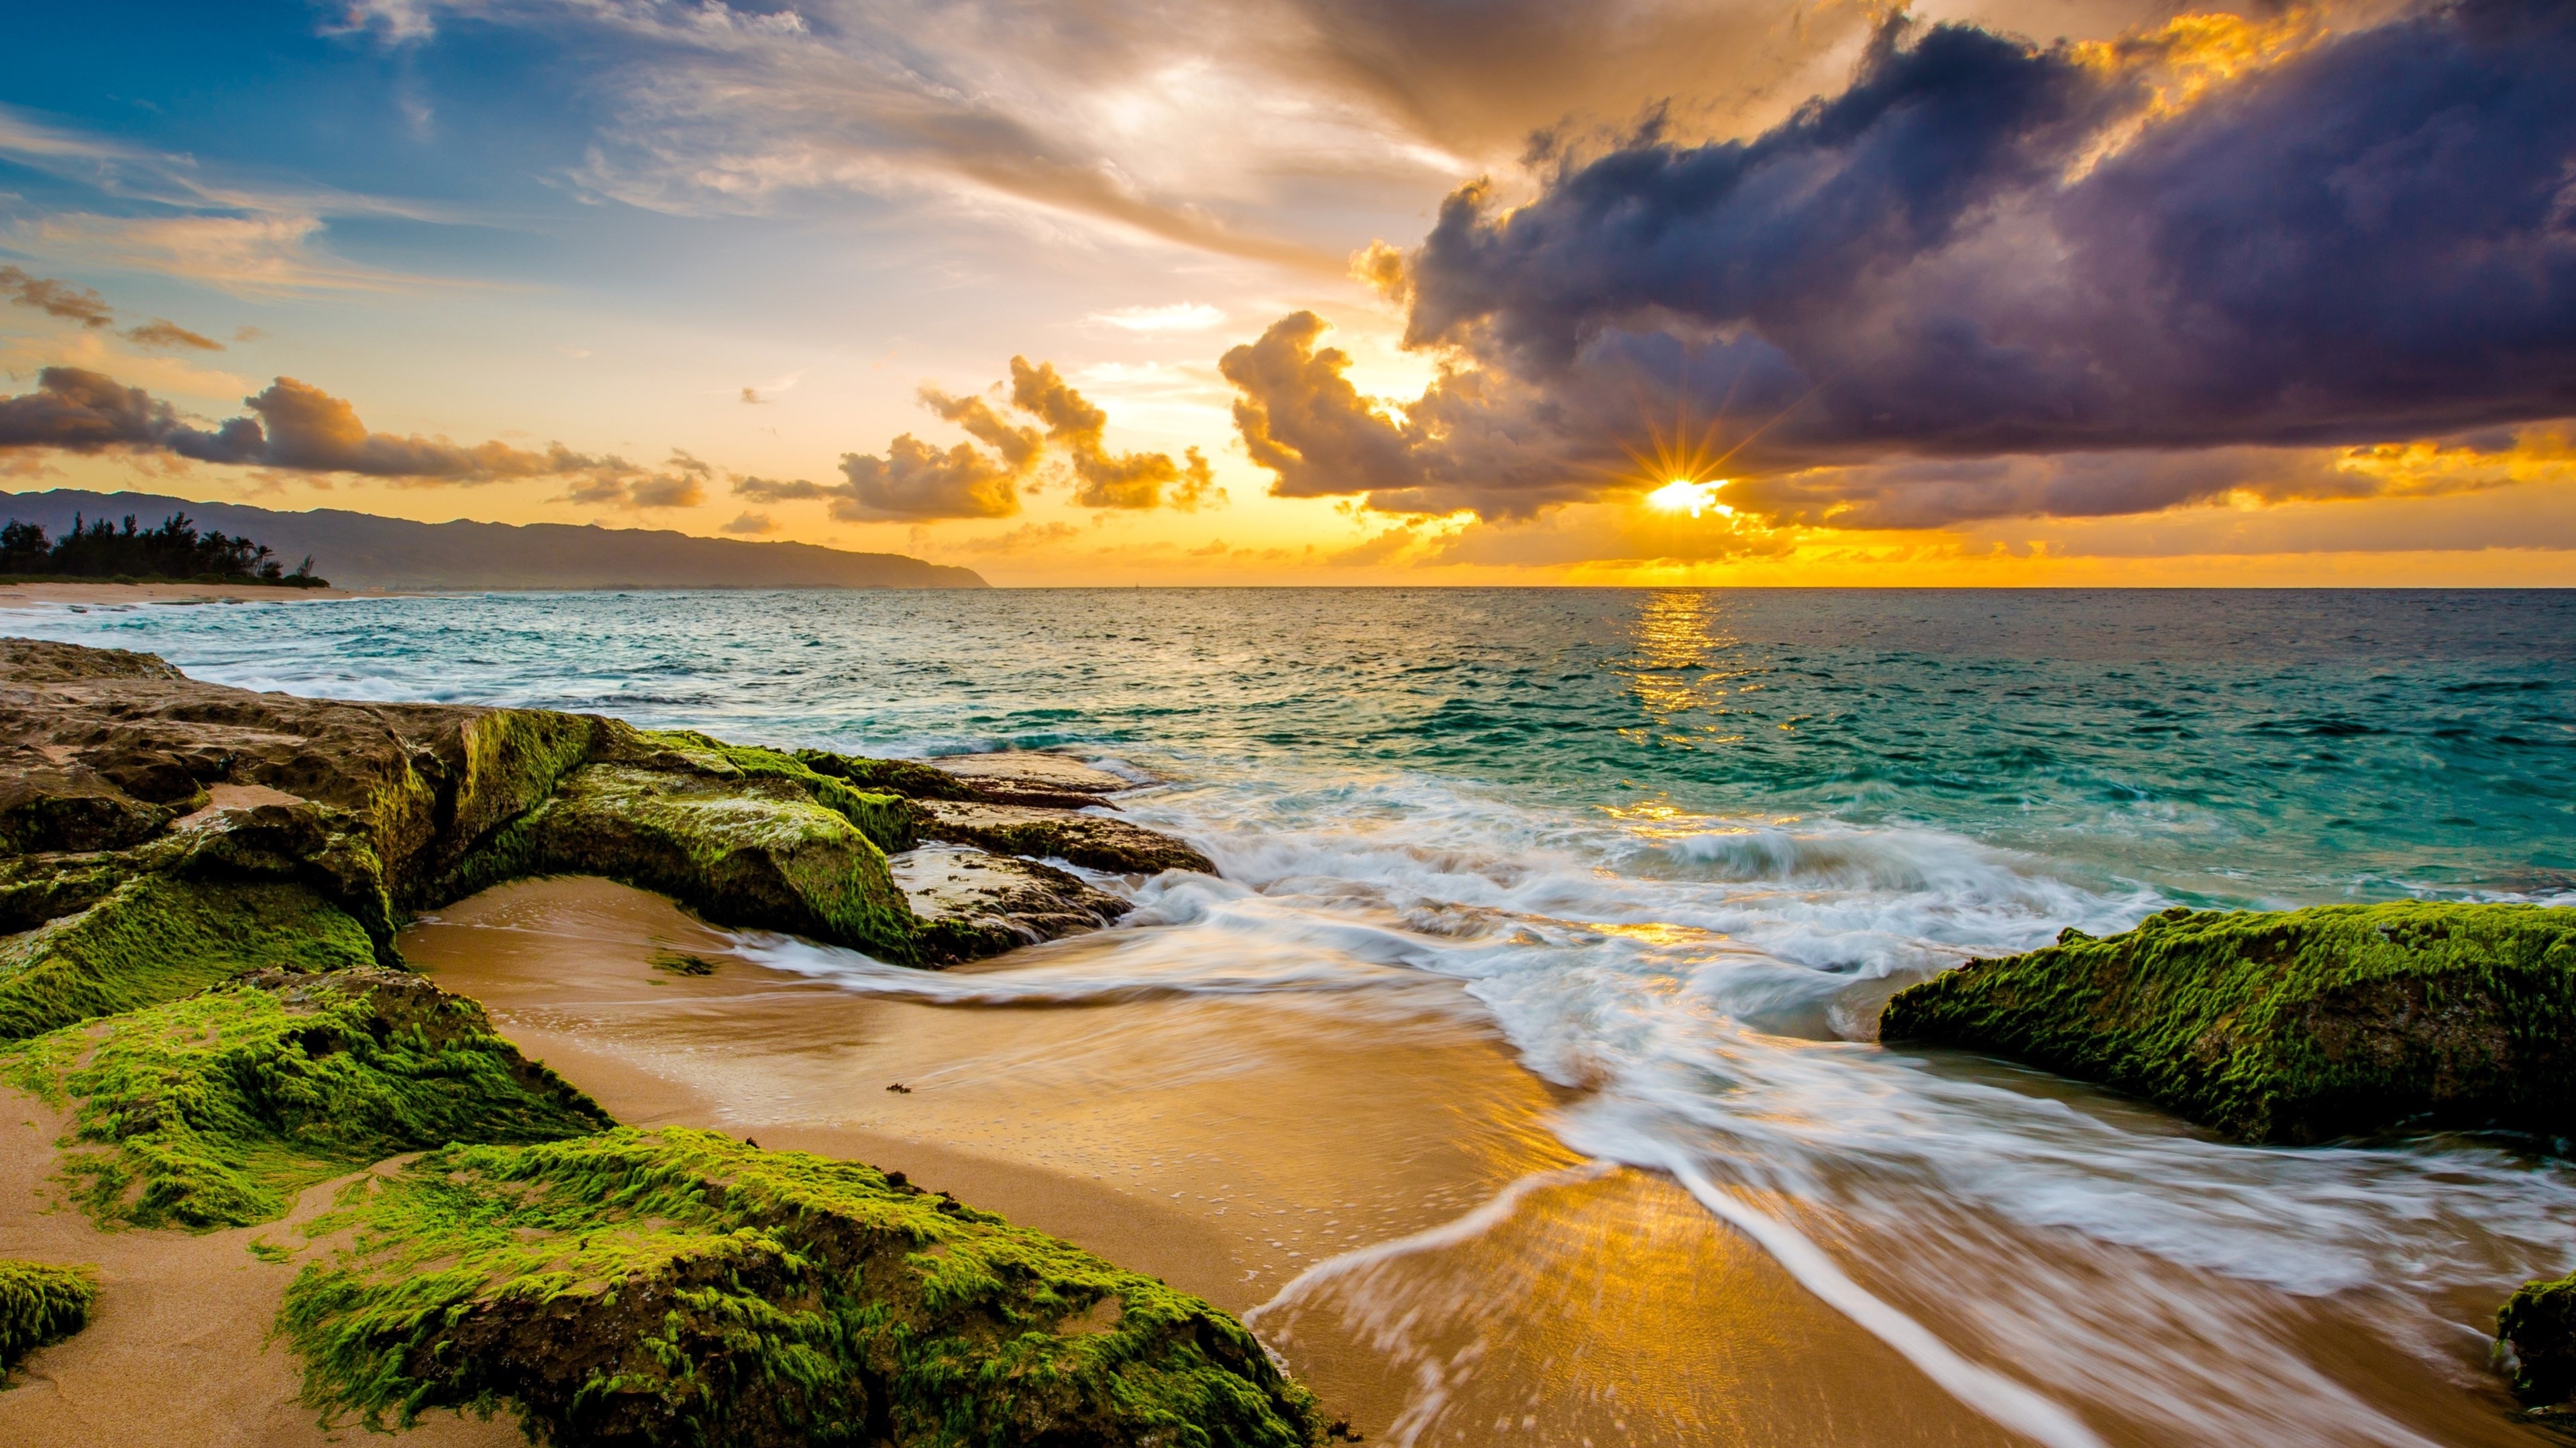 Hình nền bãi biển 4k mang lại cho bạn cảm giác như đang đứng trước một cảnh tượng hoàn hảo nhất của thiên nhiên. Những bức ảnh này sẽ khiến cho bạn cảm thấy những giây phút yên bình và thư thái khi chiêm ngưỡng vẻ đẹp của bãi biển hoang sơ, nơi mà sóng vỗ bờ, cát trắng và nắng vàng tạo nên một bức tranh đẹp như mơ.